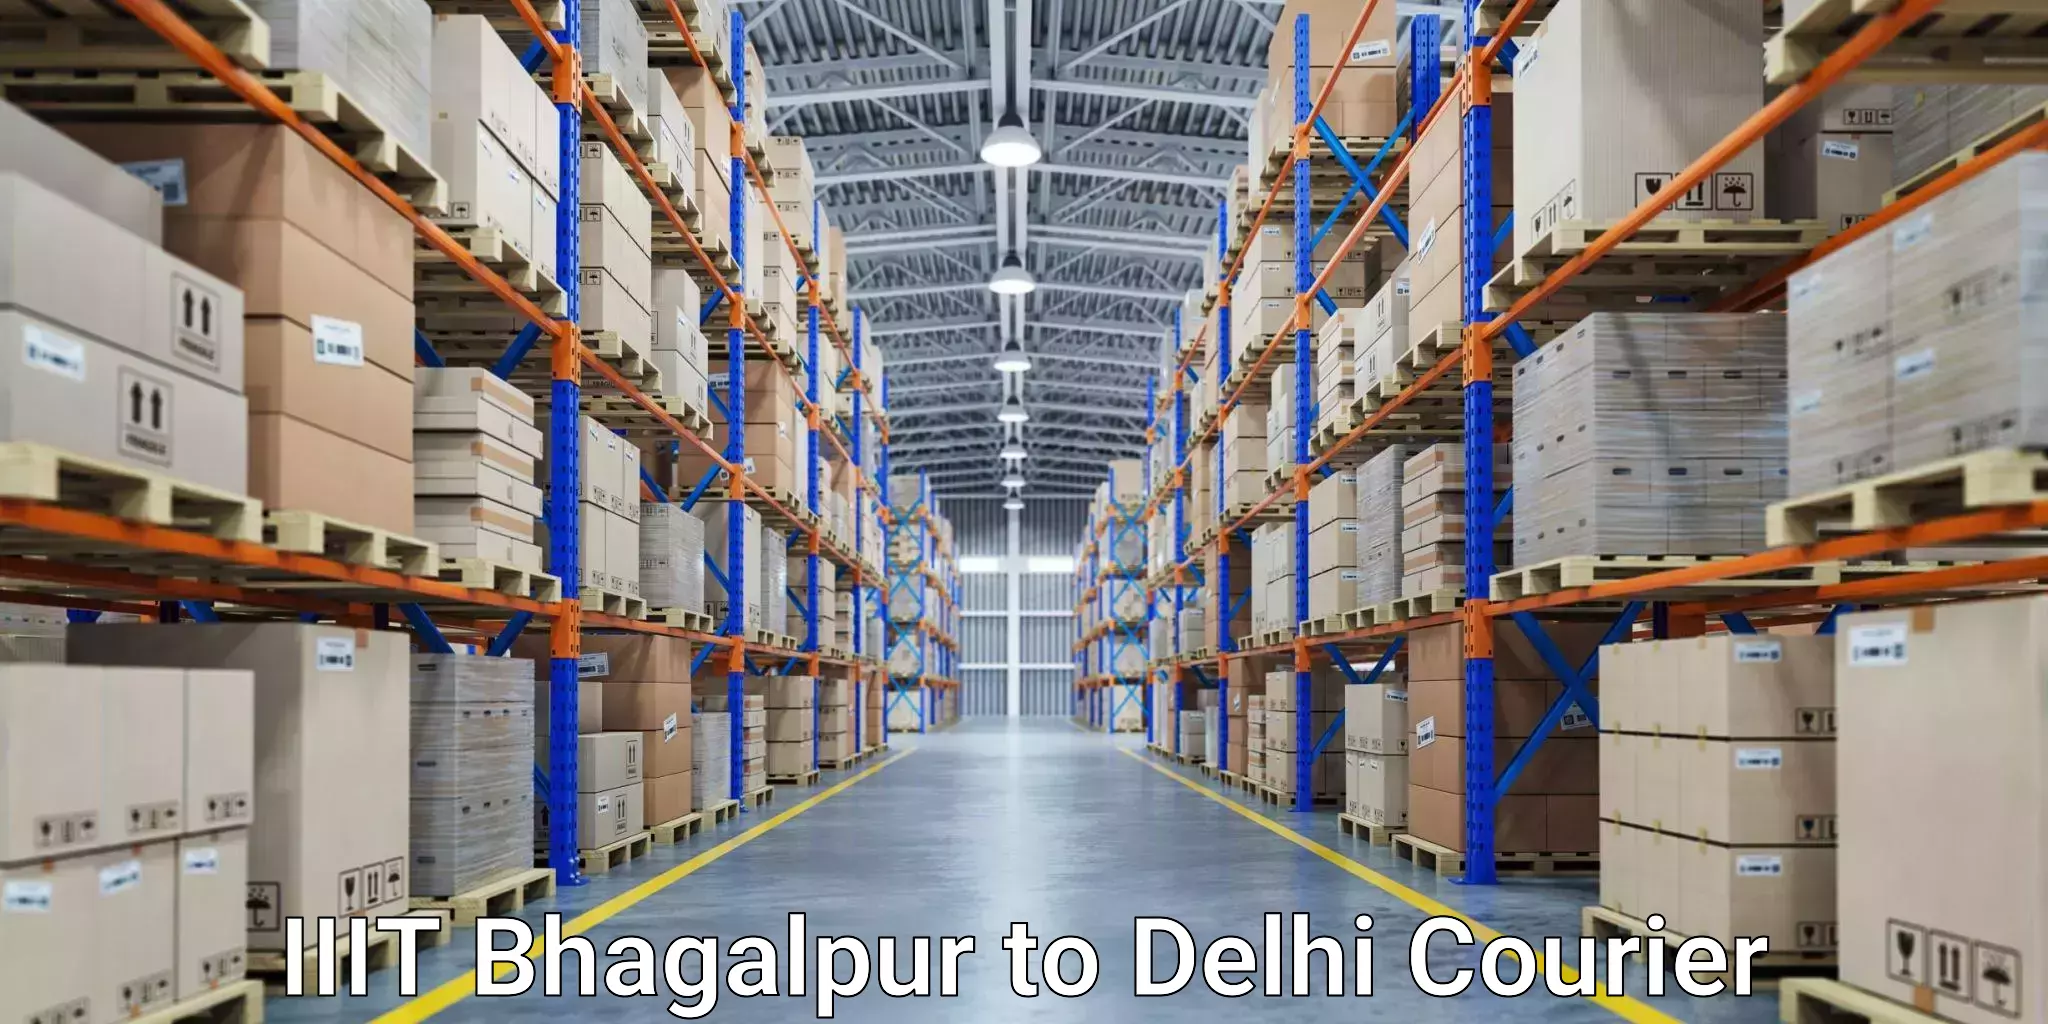 Courier app IIIT Bhagalpur to Jawaharlal Nehru University New Delhi